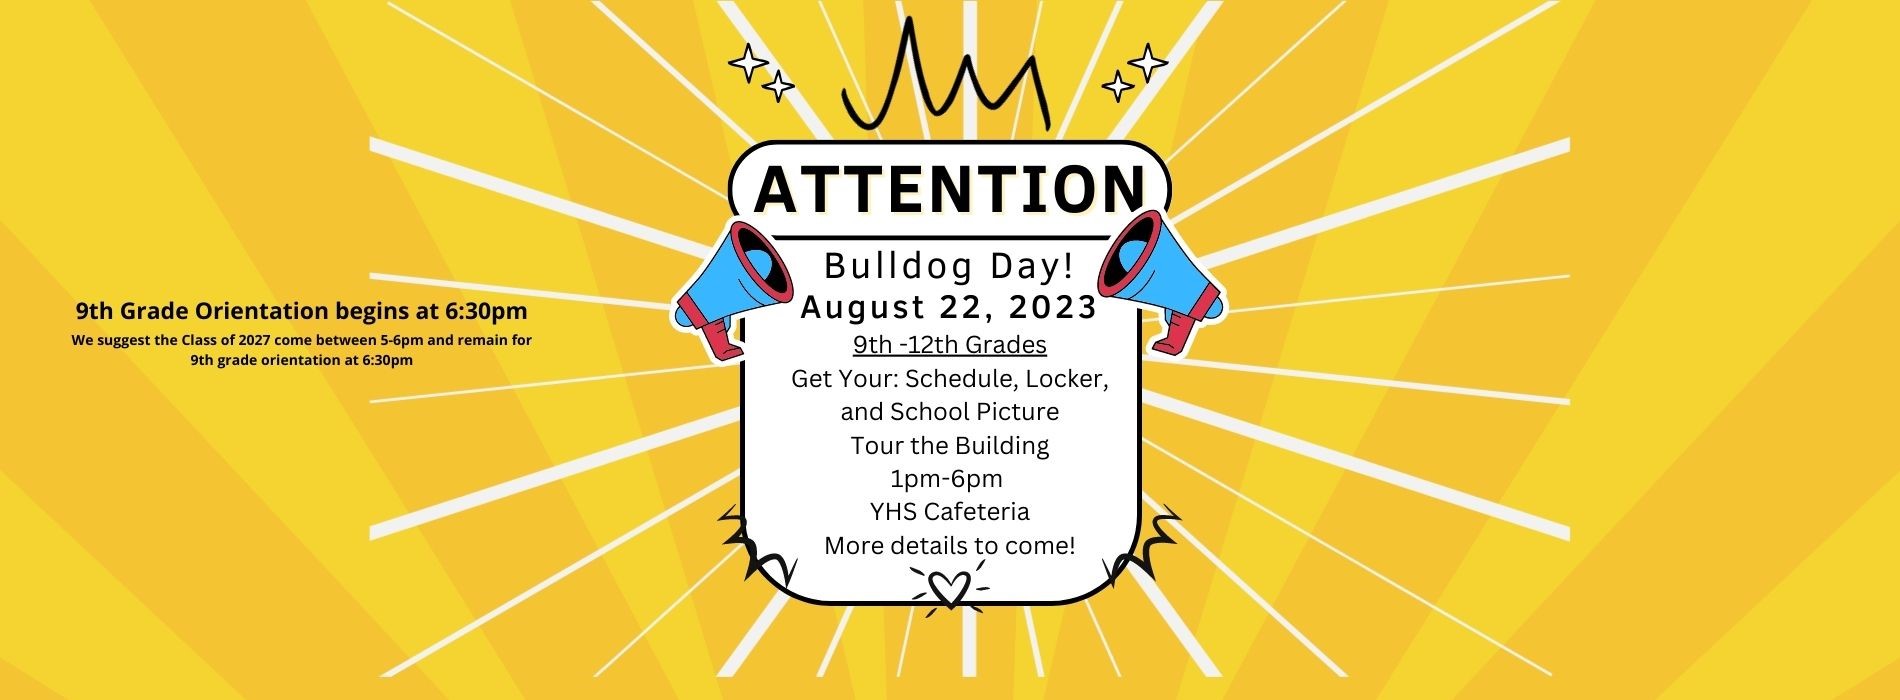 Bulldog Day